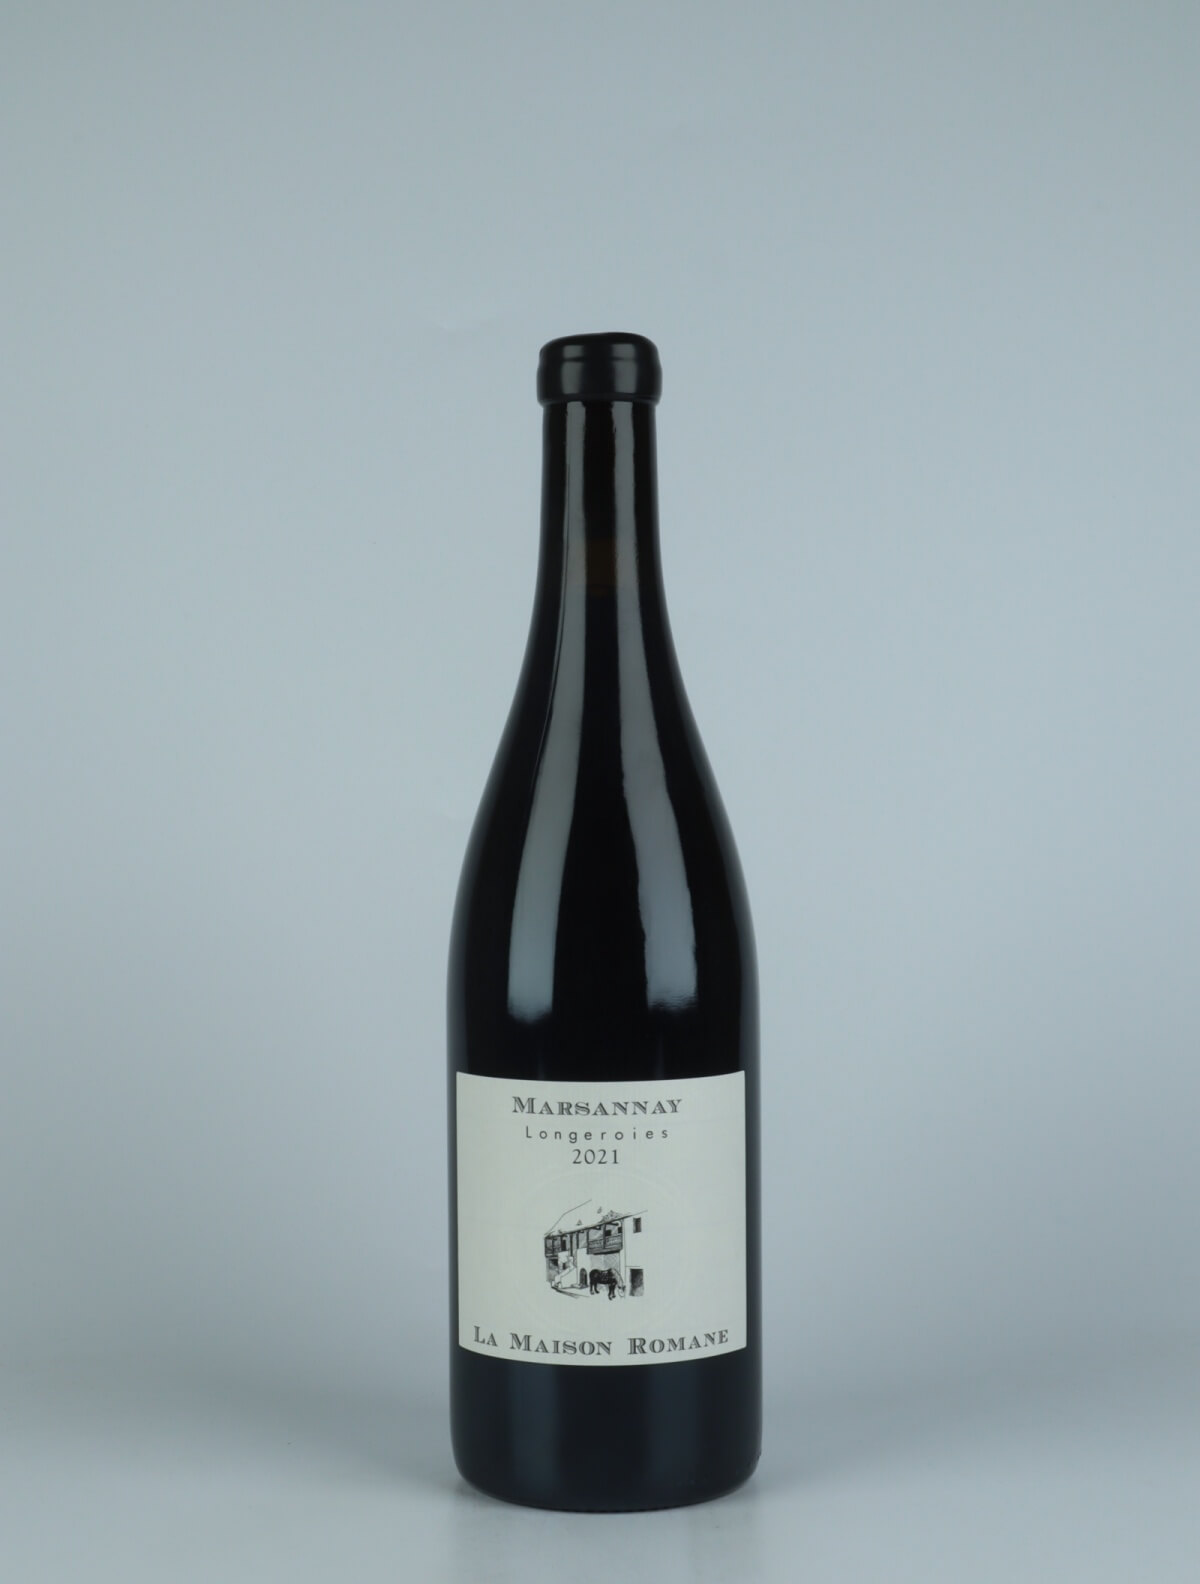 En flaske 2021 Marsannay - Longeroies Rødvin fra La Maison Romane, Bourgogne i Frankrig